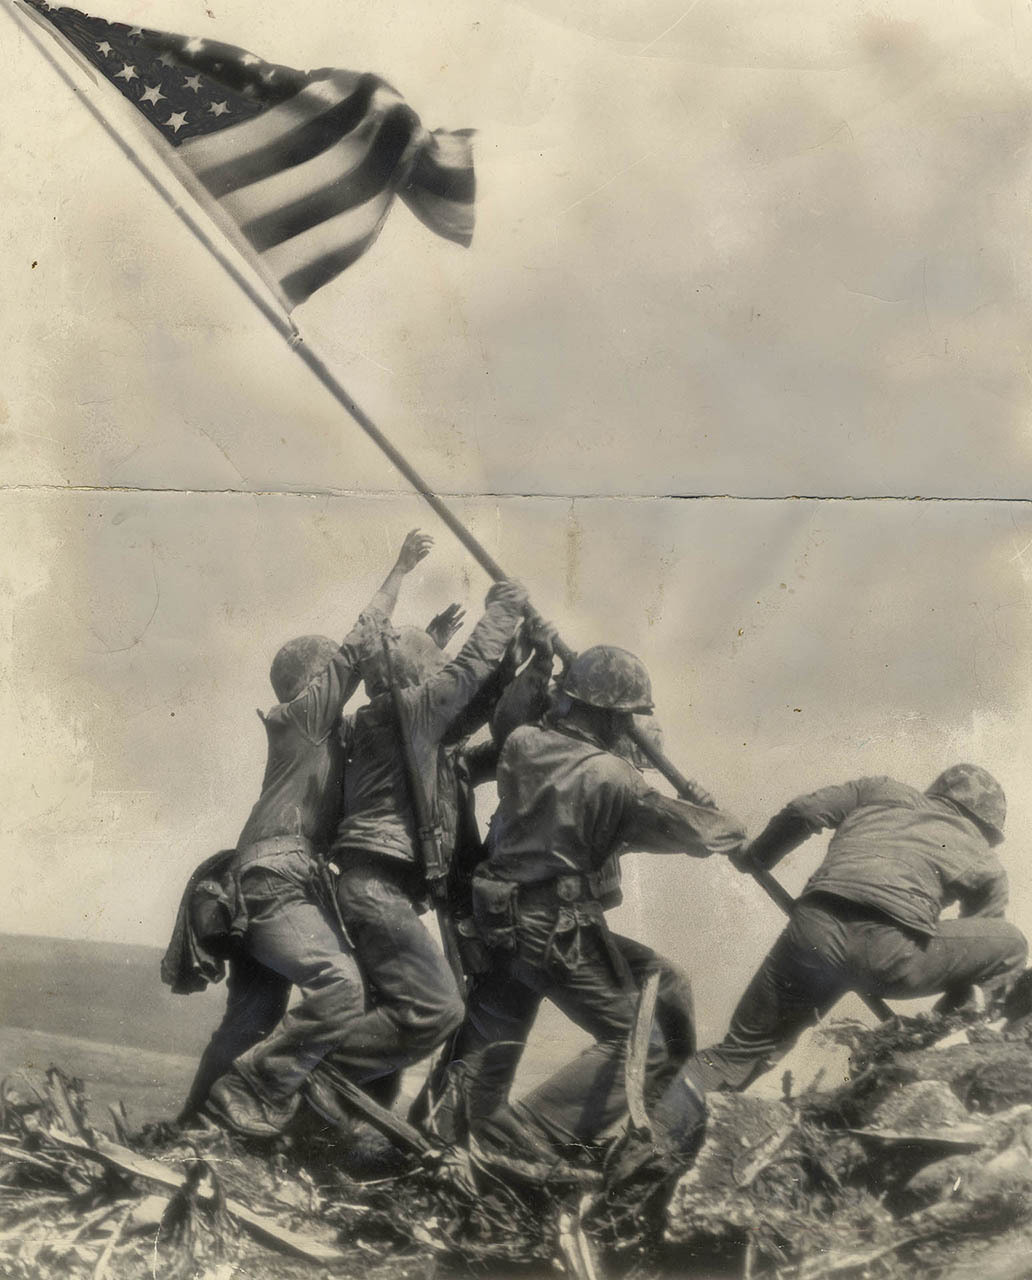 Marines raise the flag at Iwo Jima